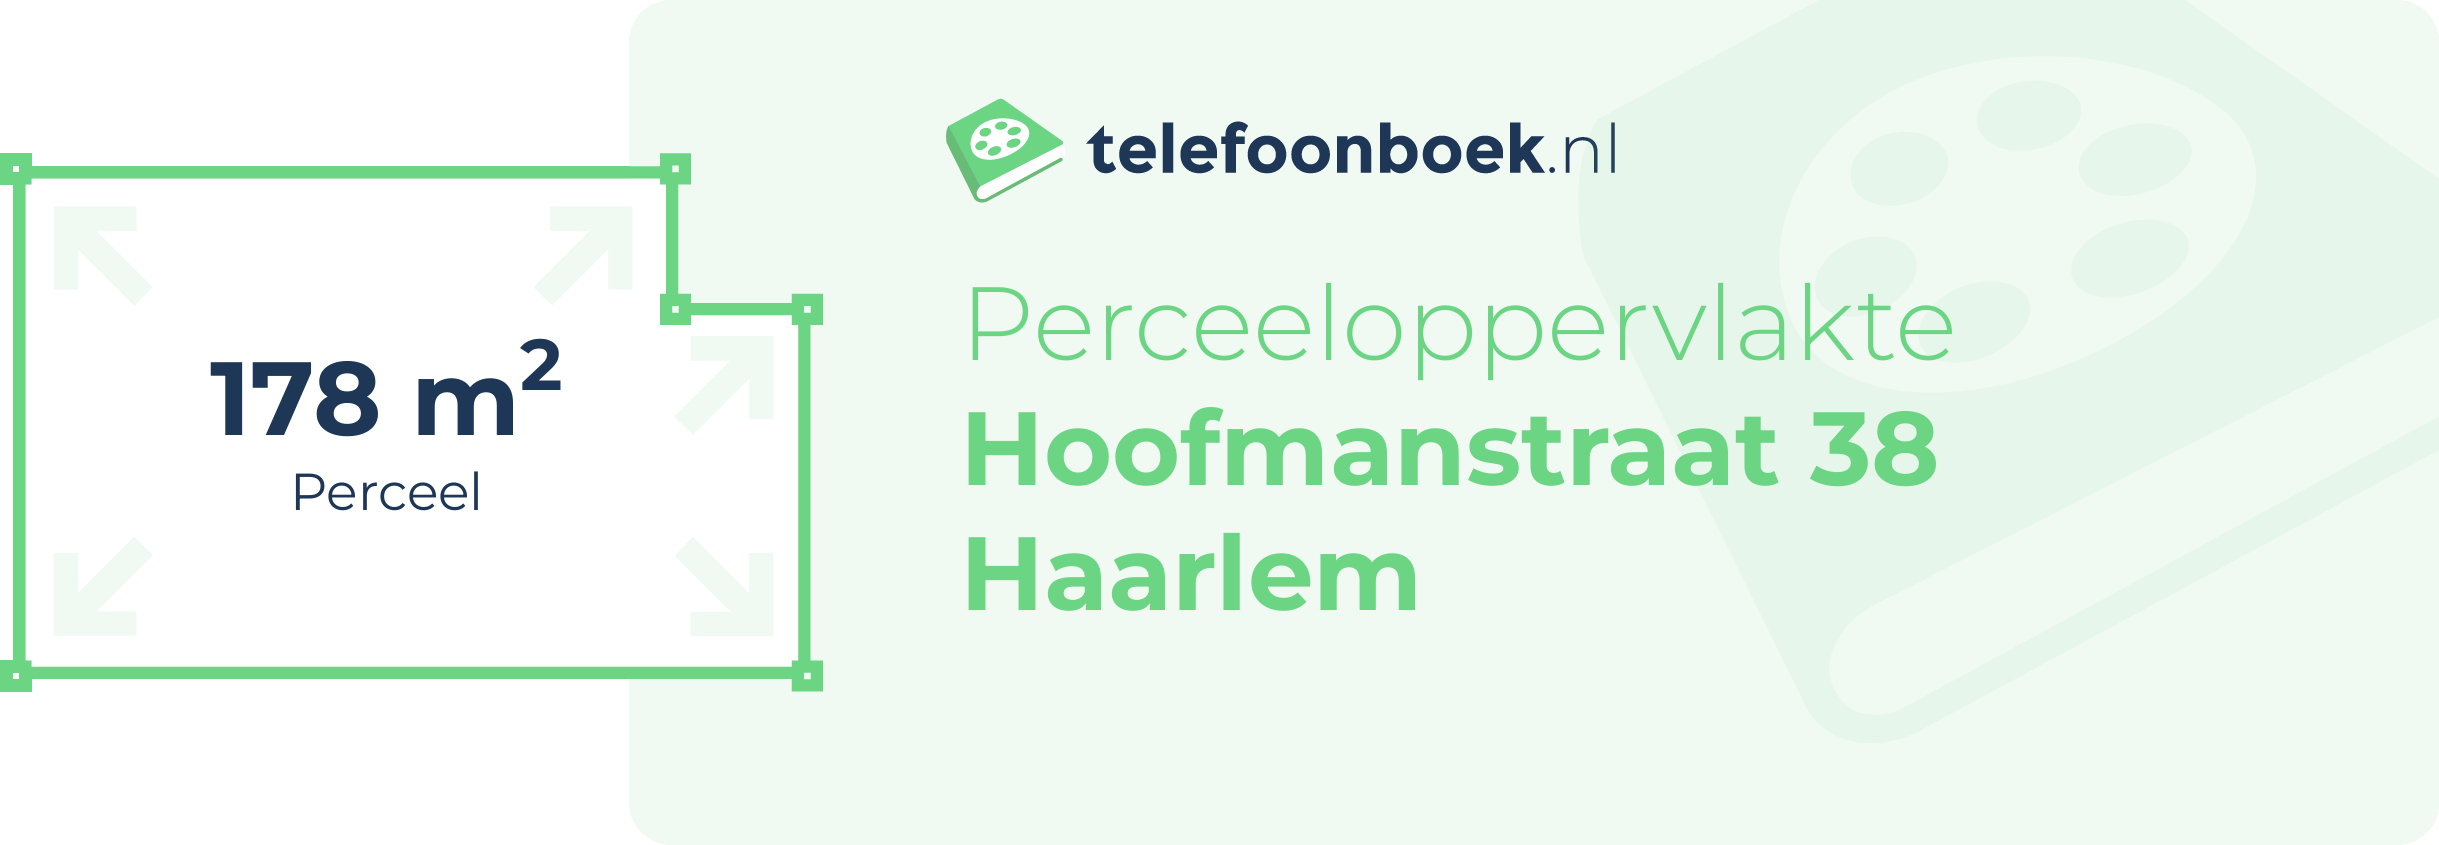 Perceeloppervlakte Hoofmanstraat 38 Haarlem